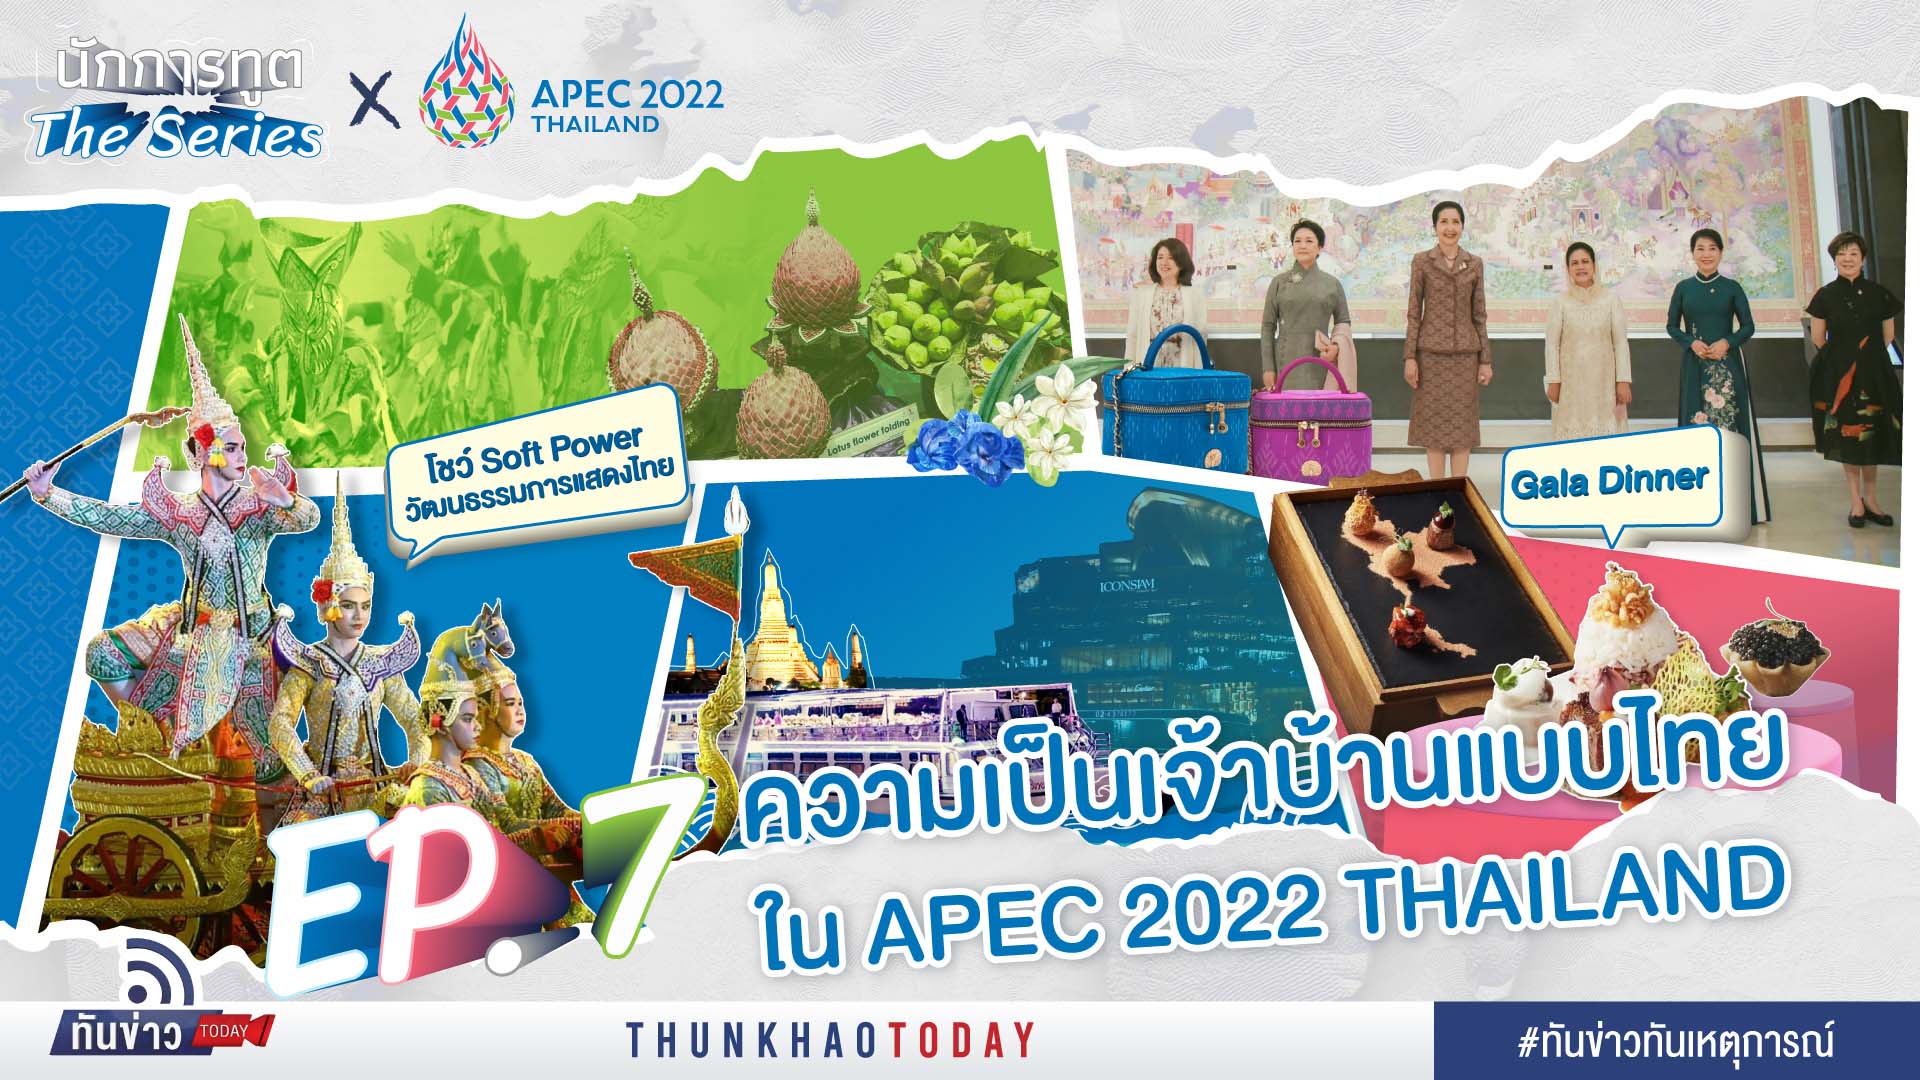 “ความเป็นเจ้าบ้านแบบไทยใน APEC 2022 Thailand